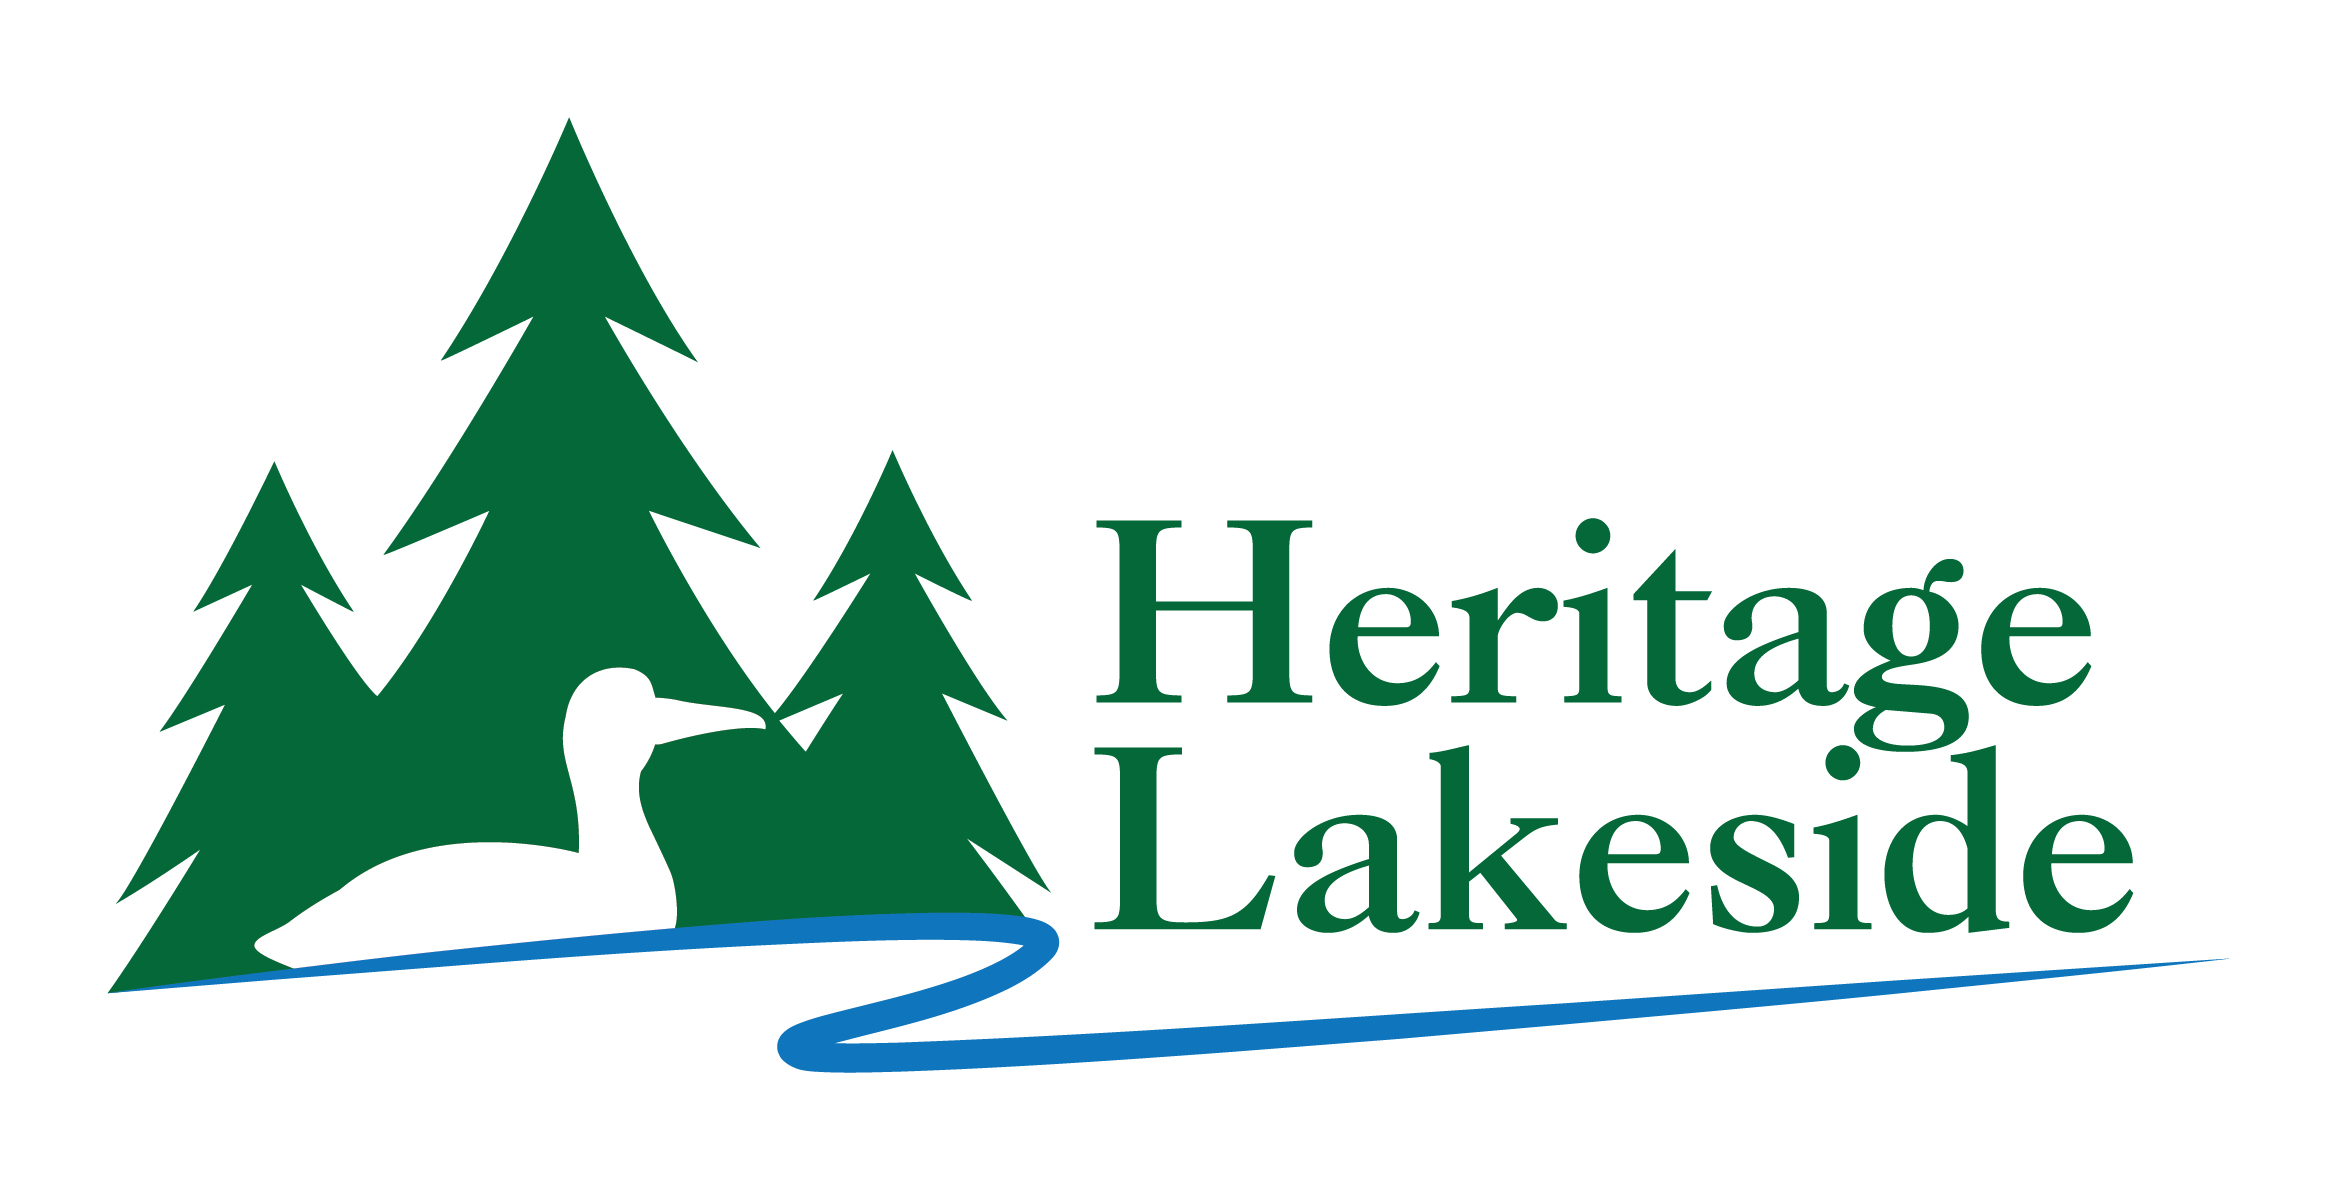 HeritageLakeside_Logo_FINAL